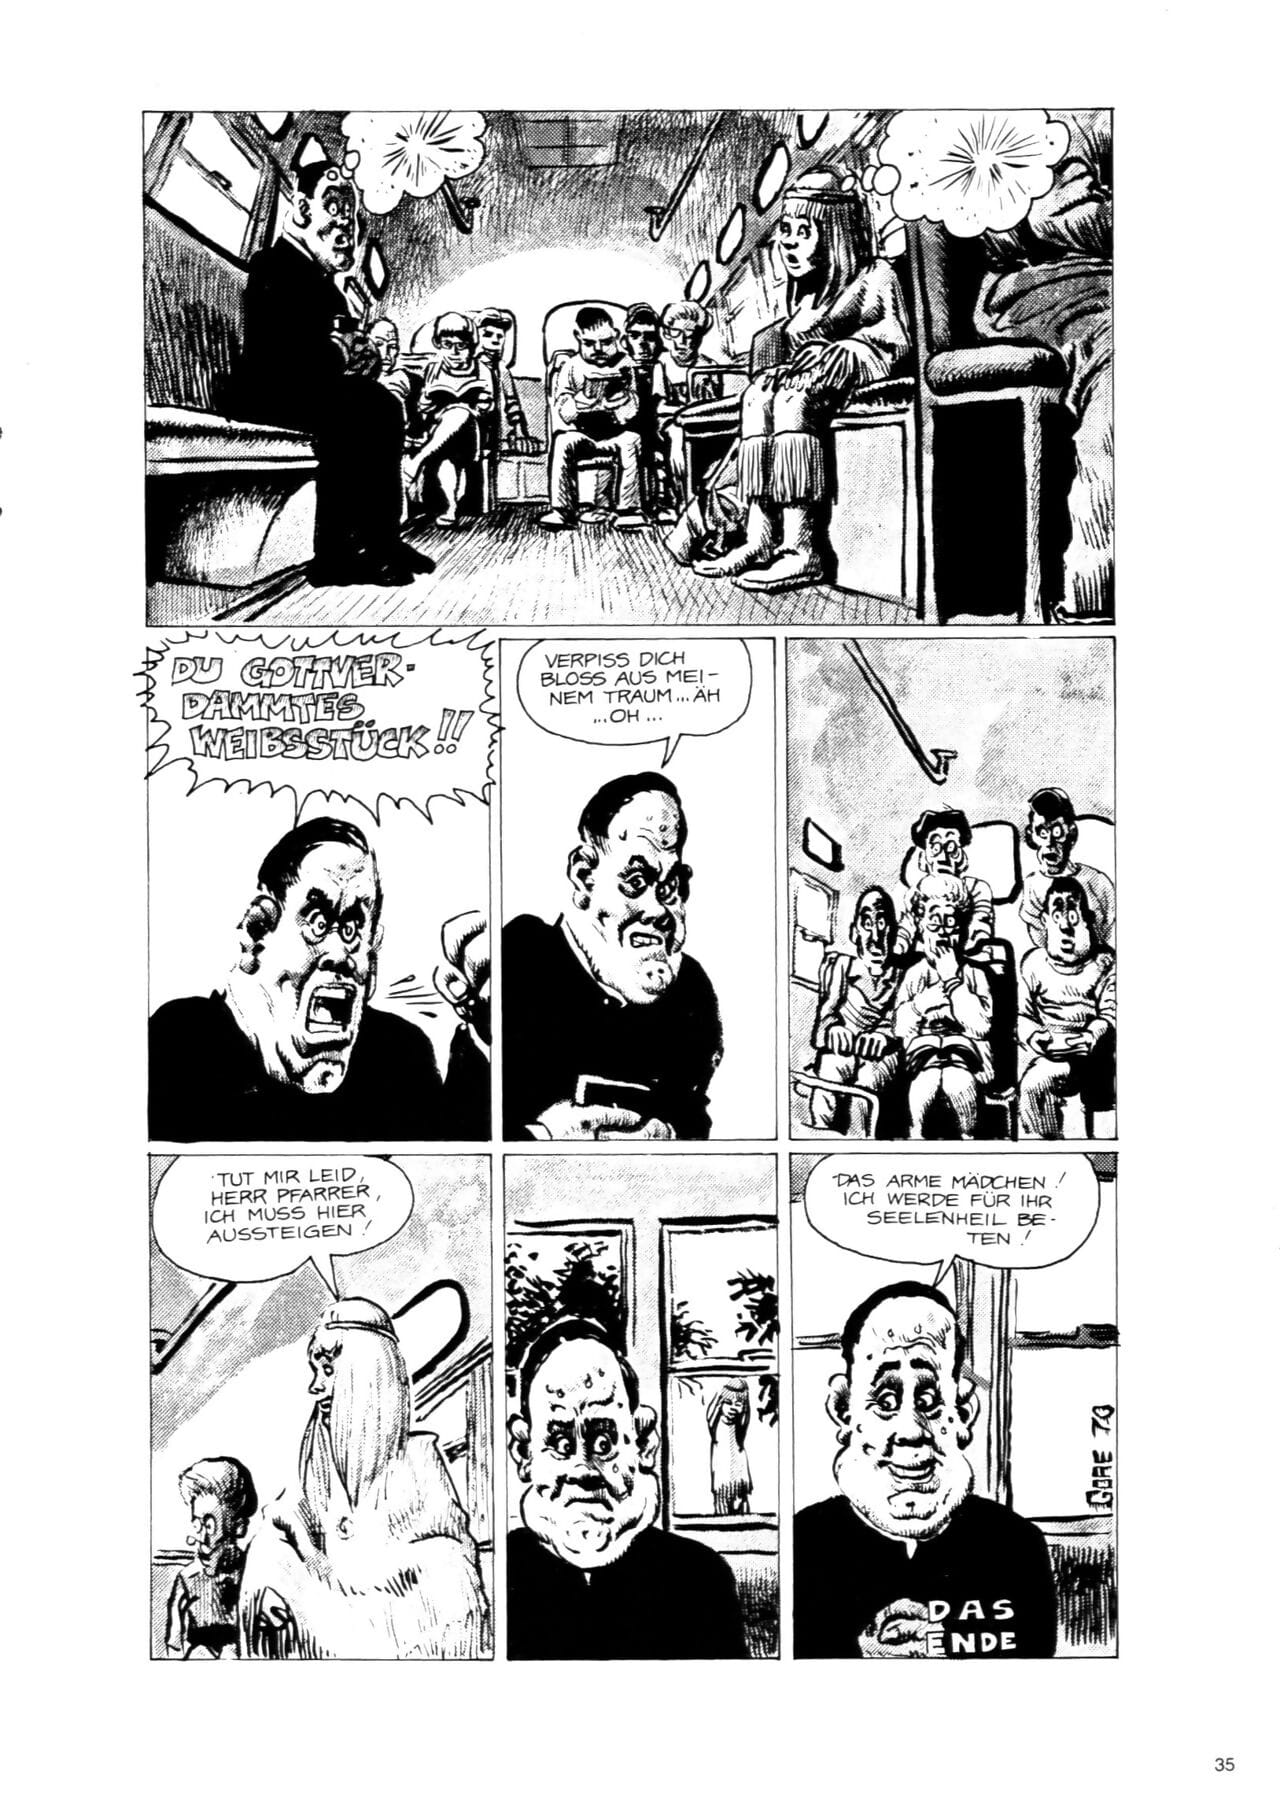 schwermetall #056 PARTIE 2 page 1